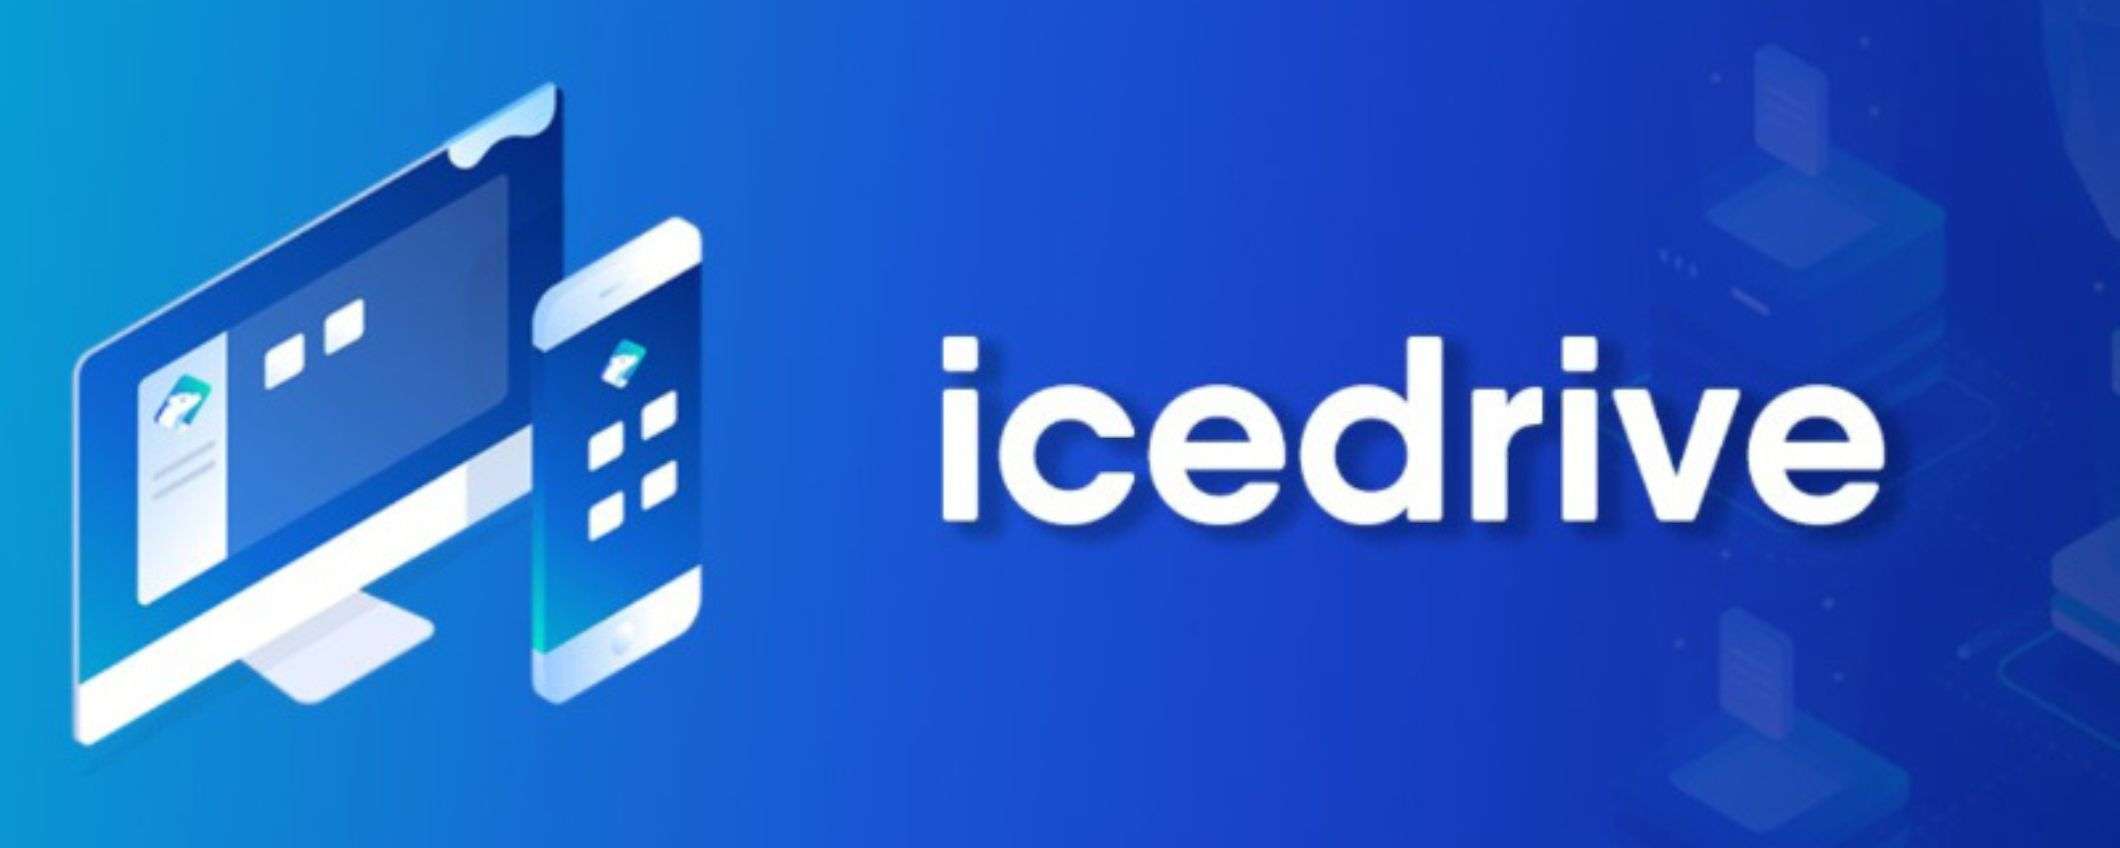 IceDrive: crea un account e hai uno spazio cloud da 10GB gratis